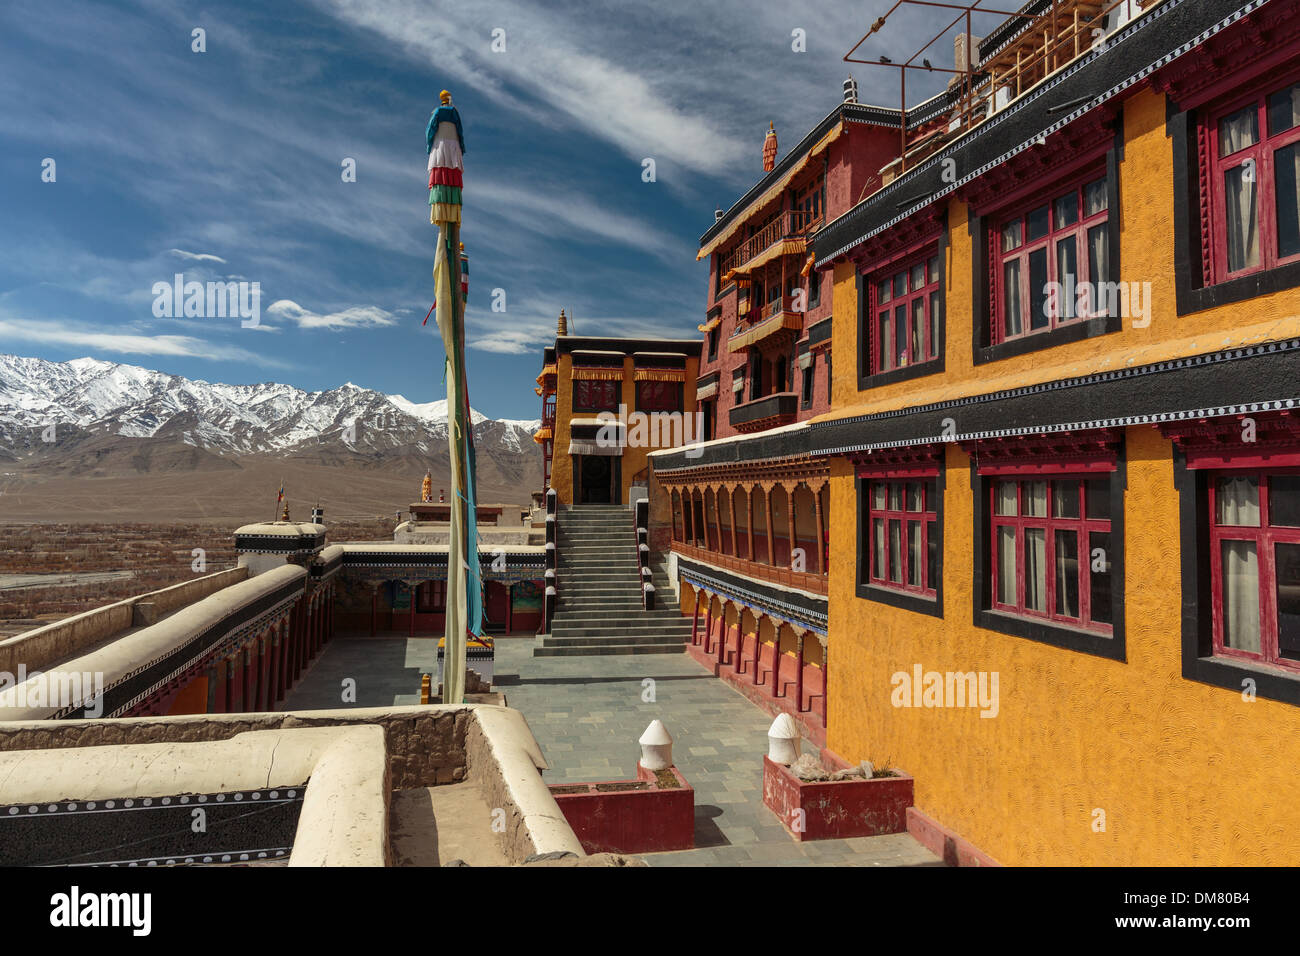 Le monastère de Thiksey est assis sur la vallée de l'Indus du Ladakh, Inde du nord. Ce Gompa bouddhiste de l'himalaya est d'architecture tibétaine Banque D'Images